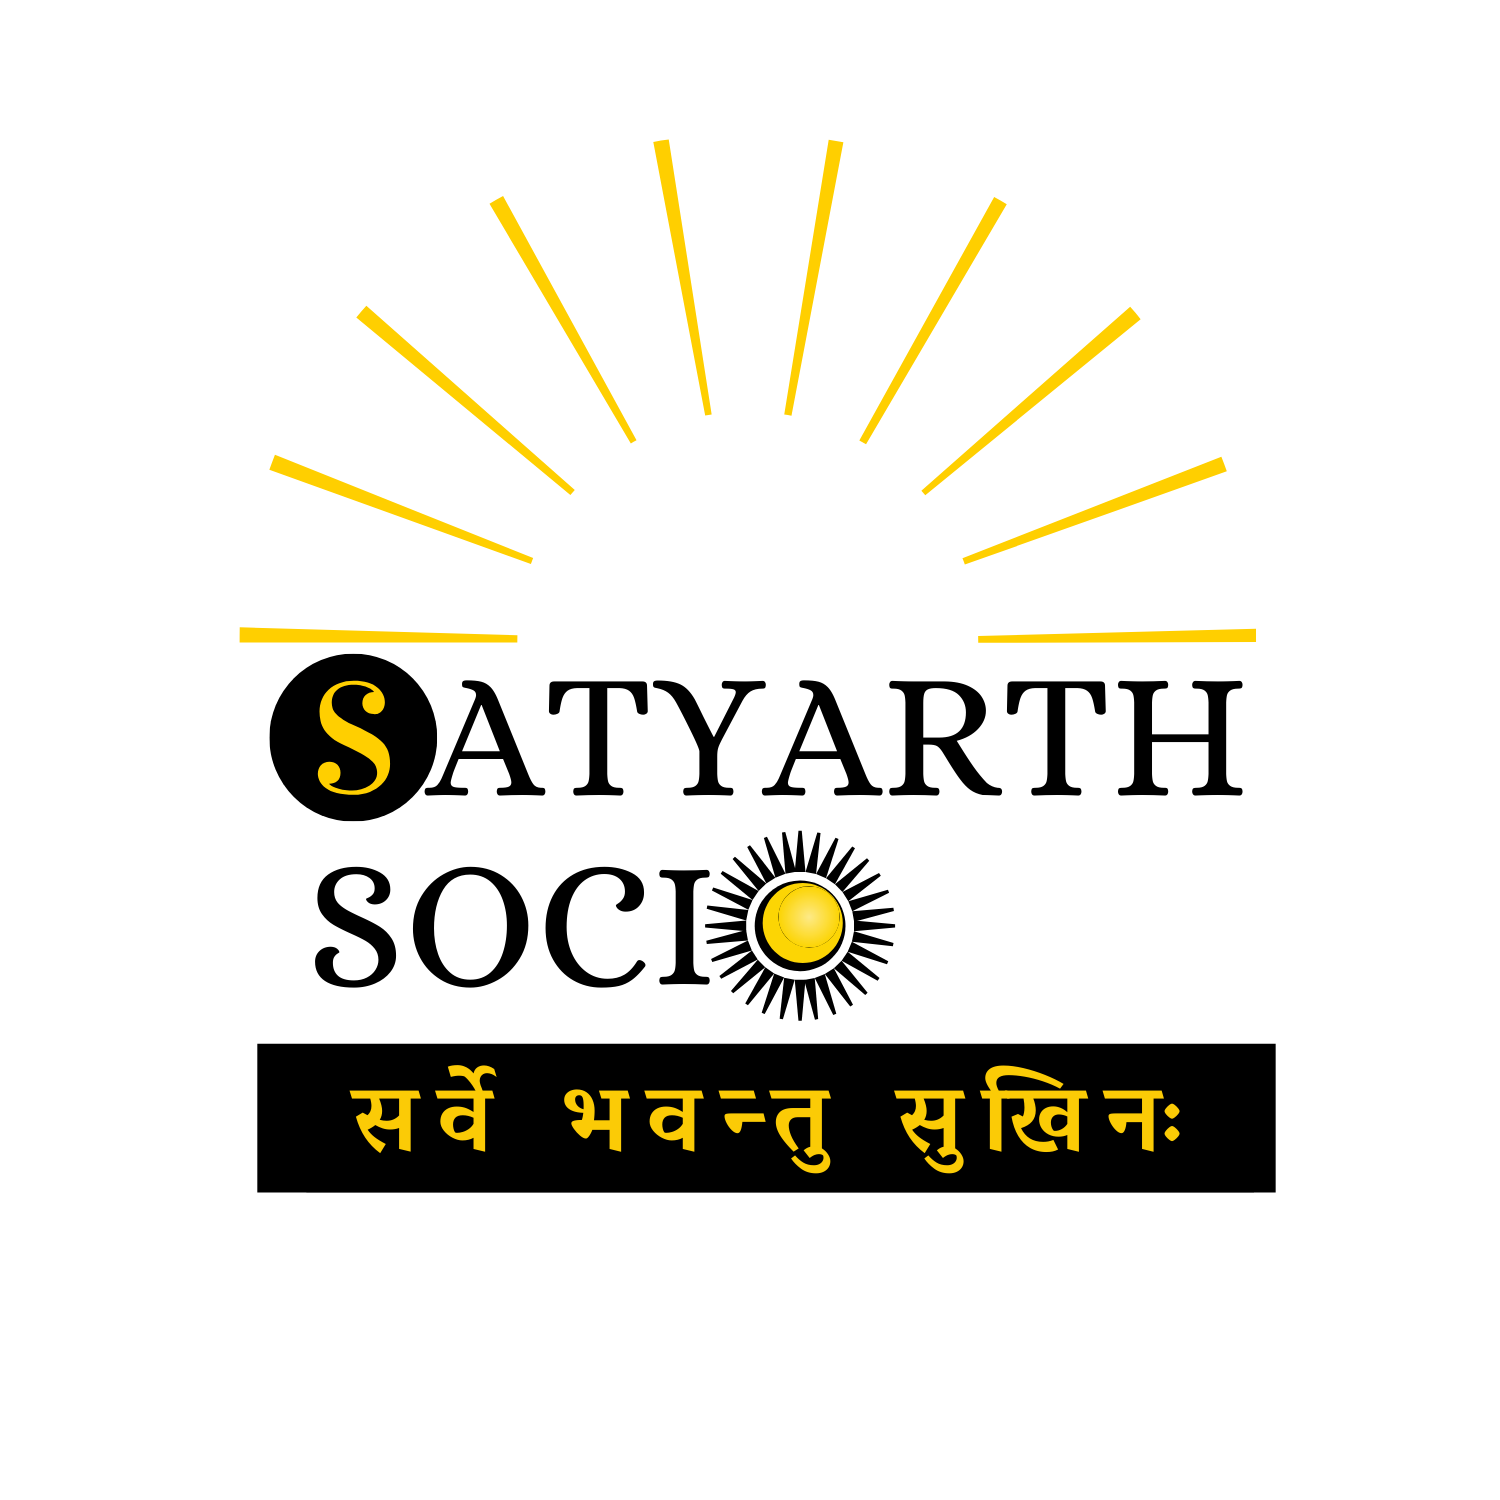 Satyarth Socio